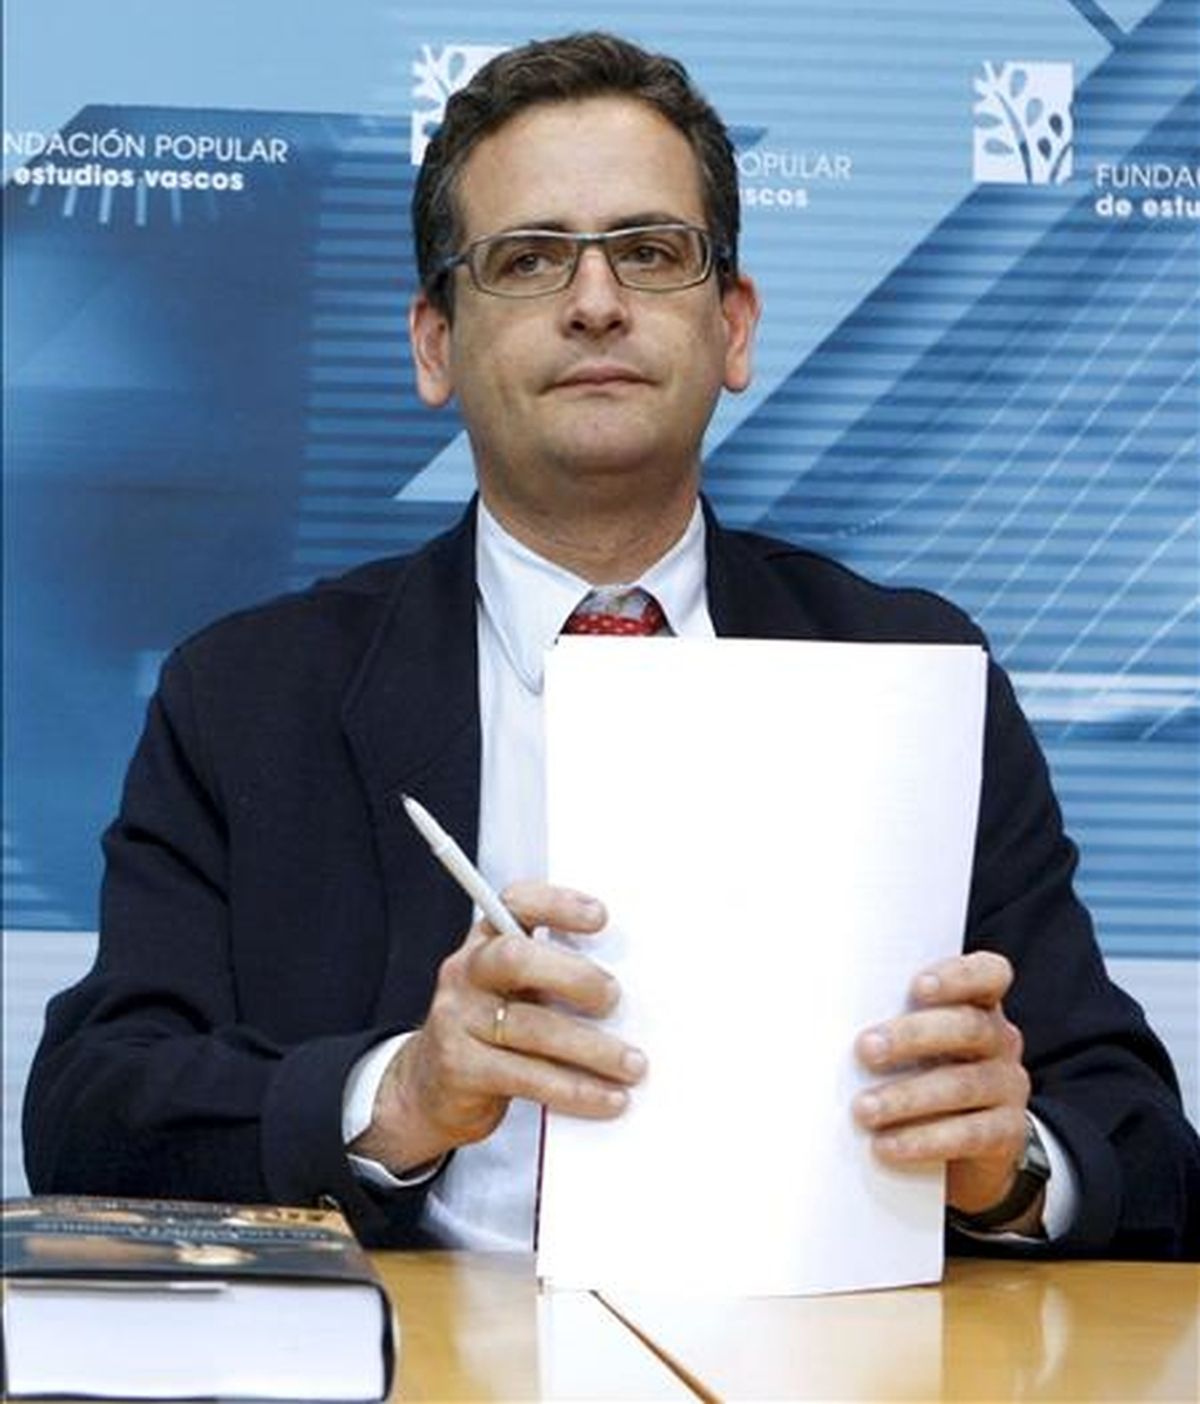 El presidente del PP vasco, Antonio Basagoiti. EFE/Archivo